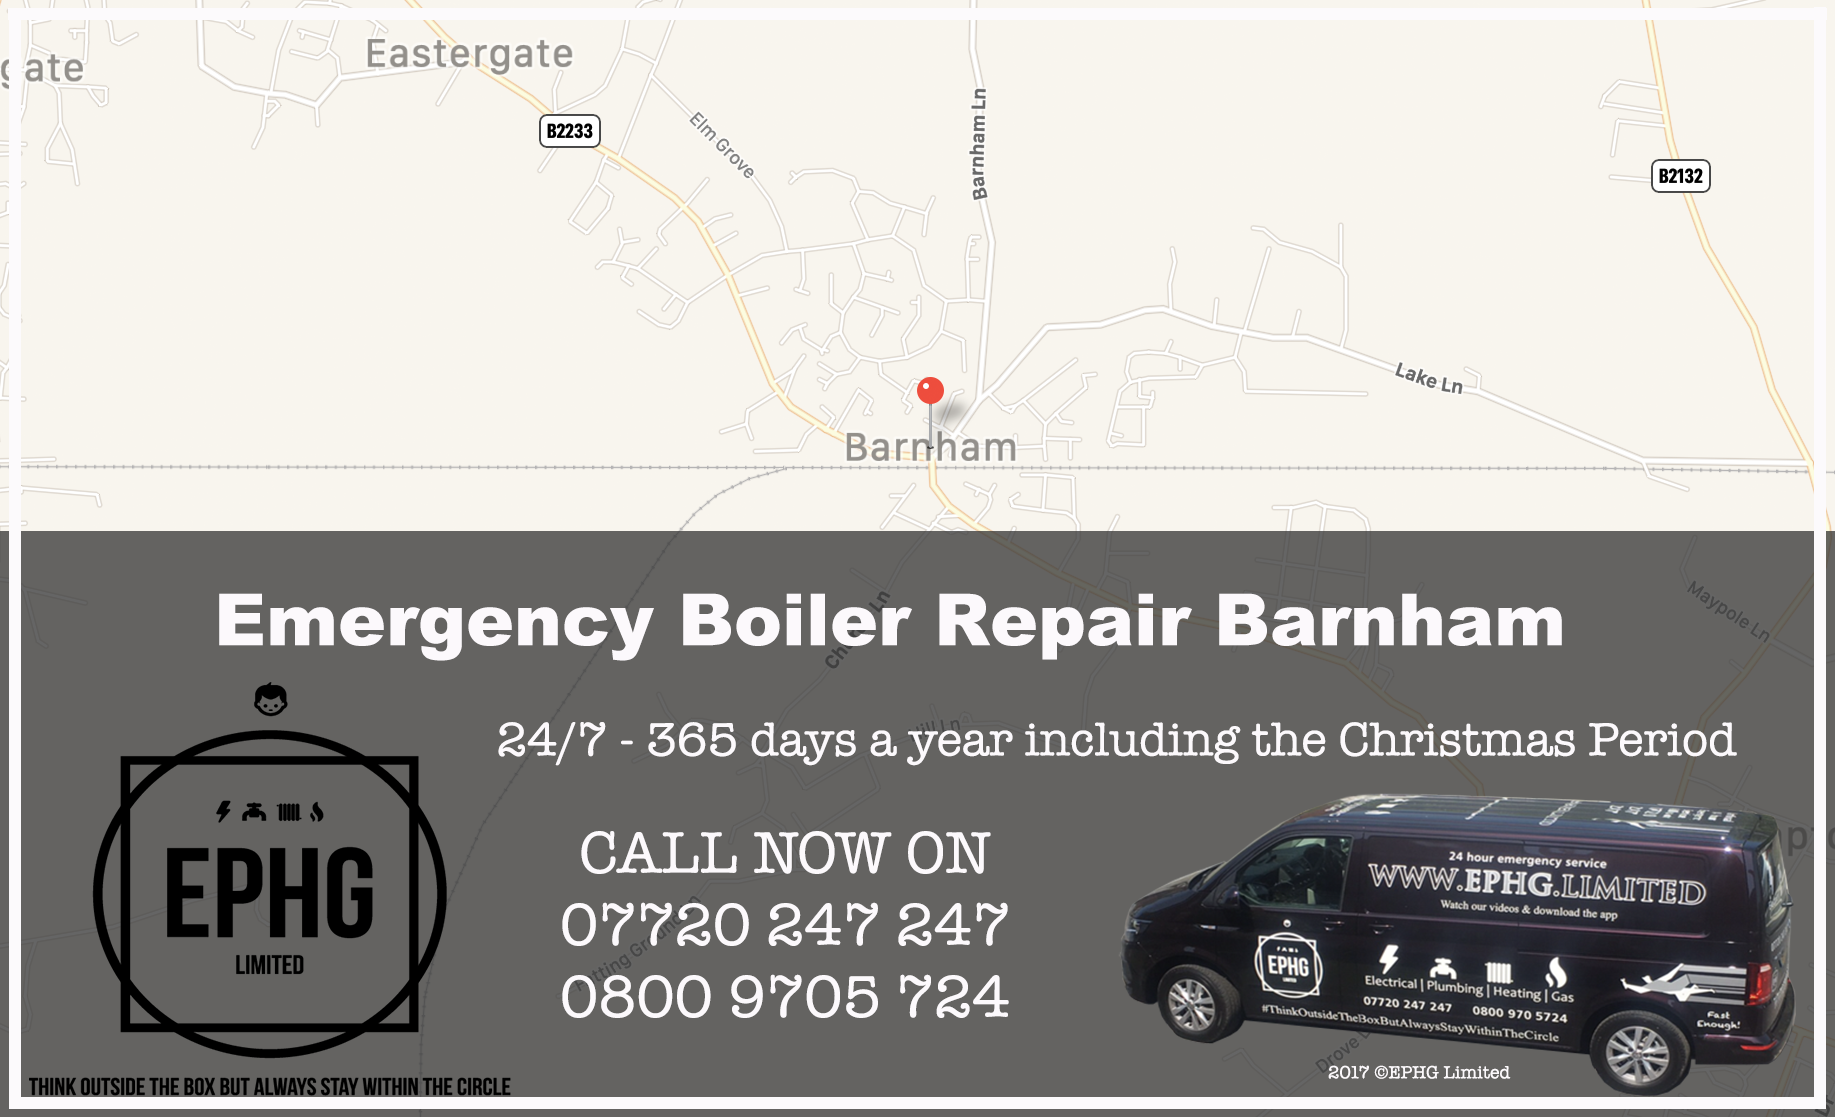 24 Hour Emergency Boiler Repair Barnham